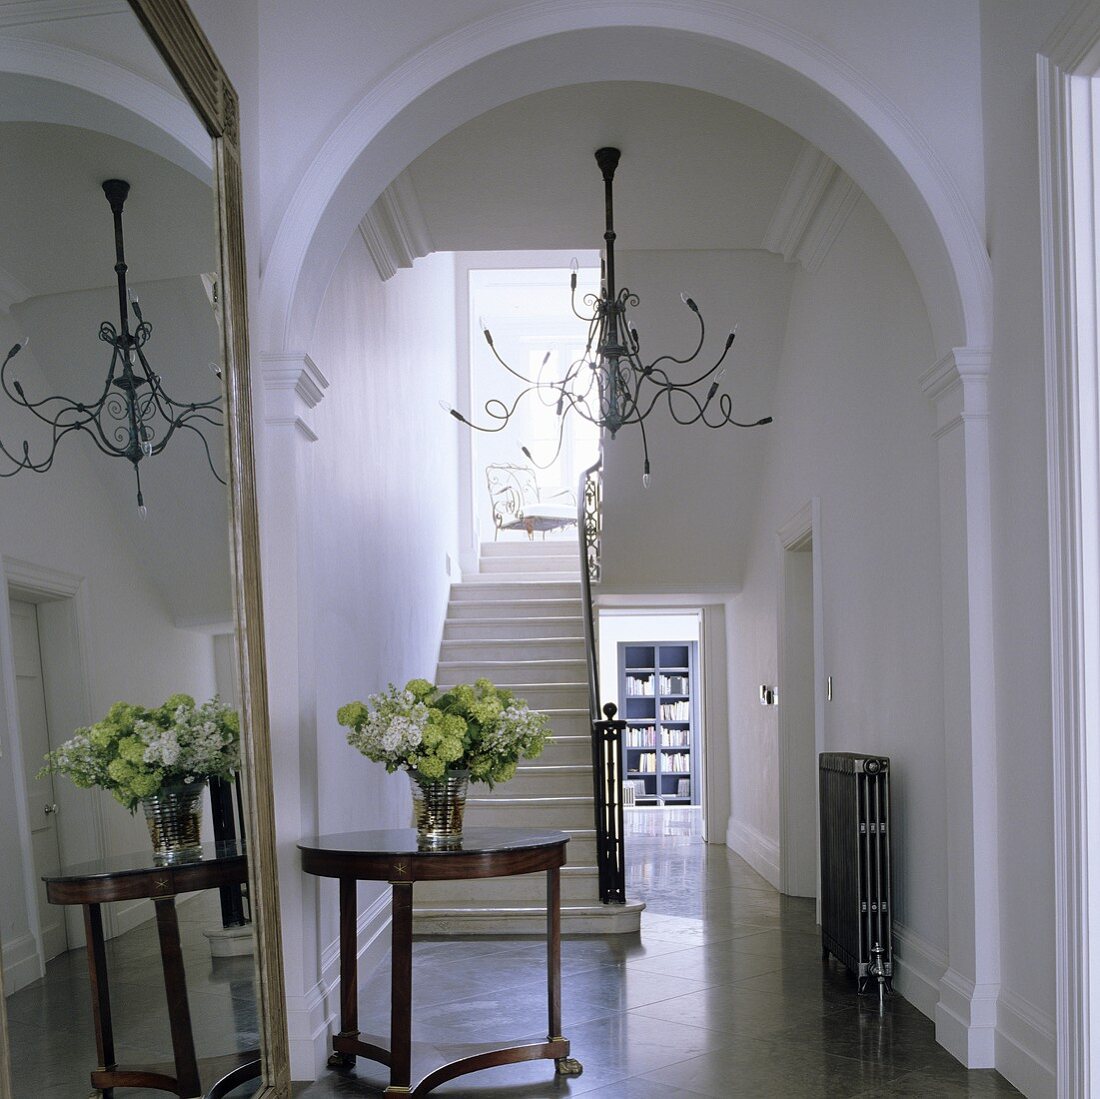 Rundbogen im eleganten Treppenhaus mit Blick auf antiken Beistelltisch und Kerzenleuchter mit Medusaarmen